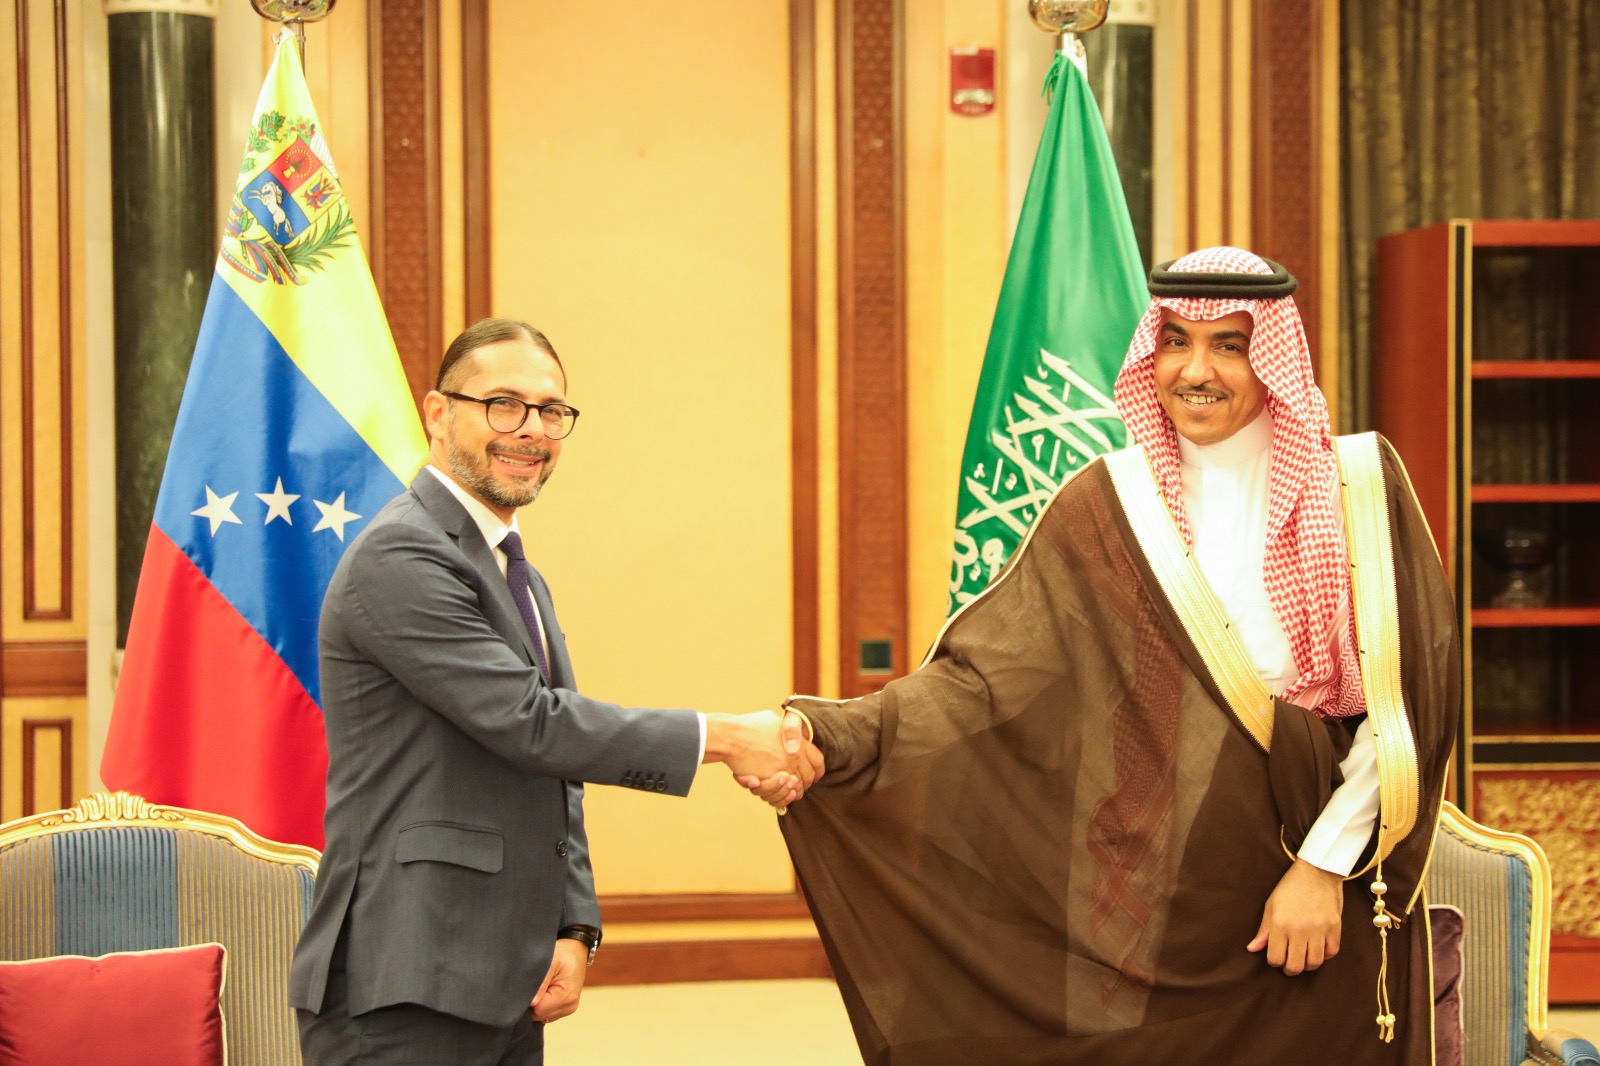 Afianzar comunicación y cultura centra reunión de ministros de Venezuela y Arabia Saudita